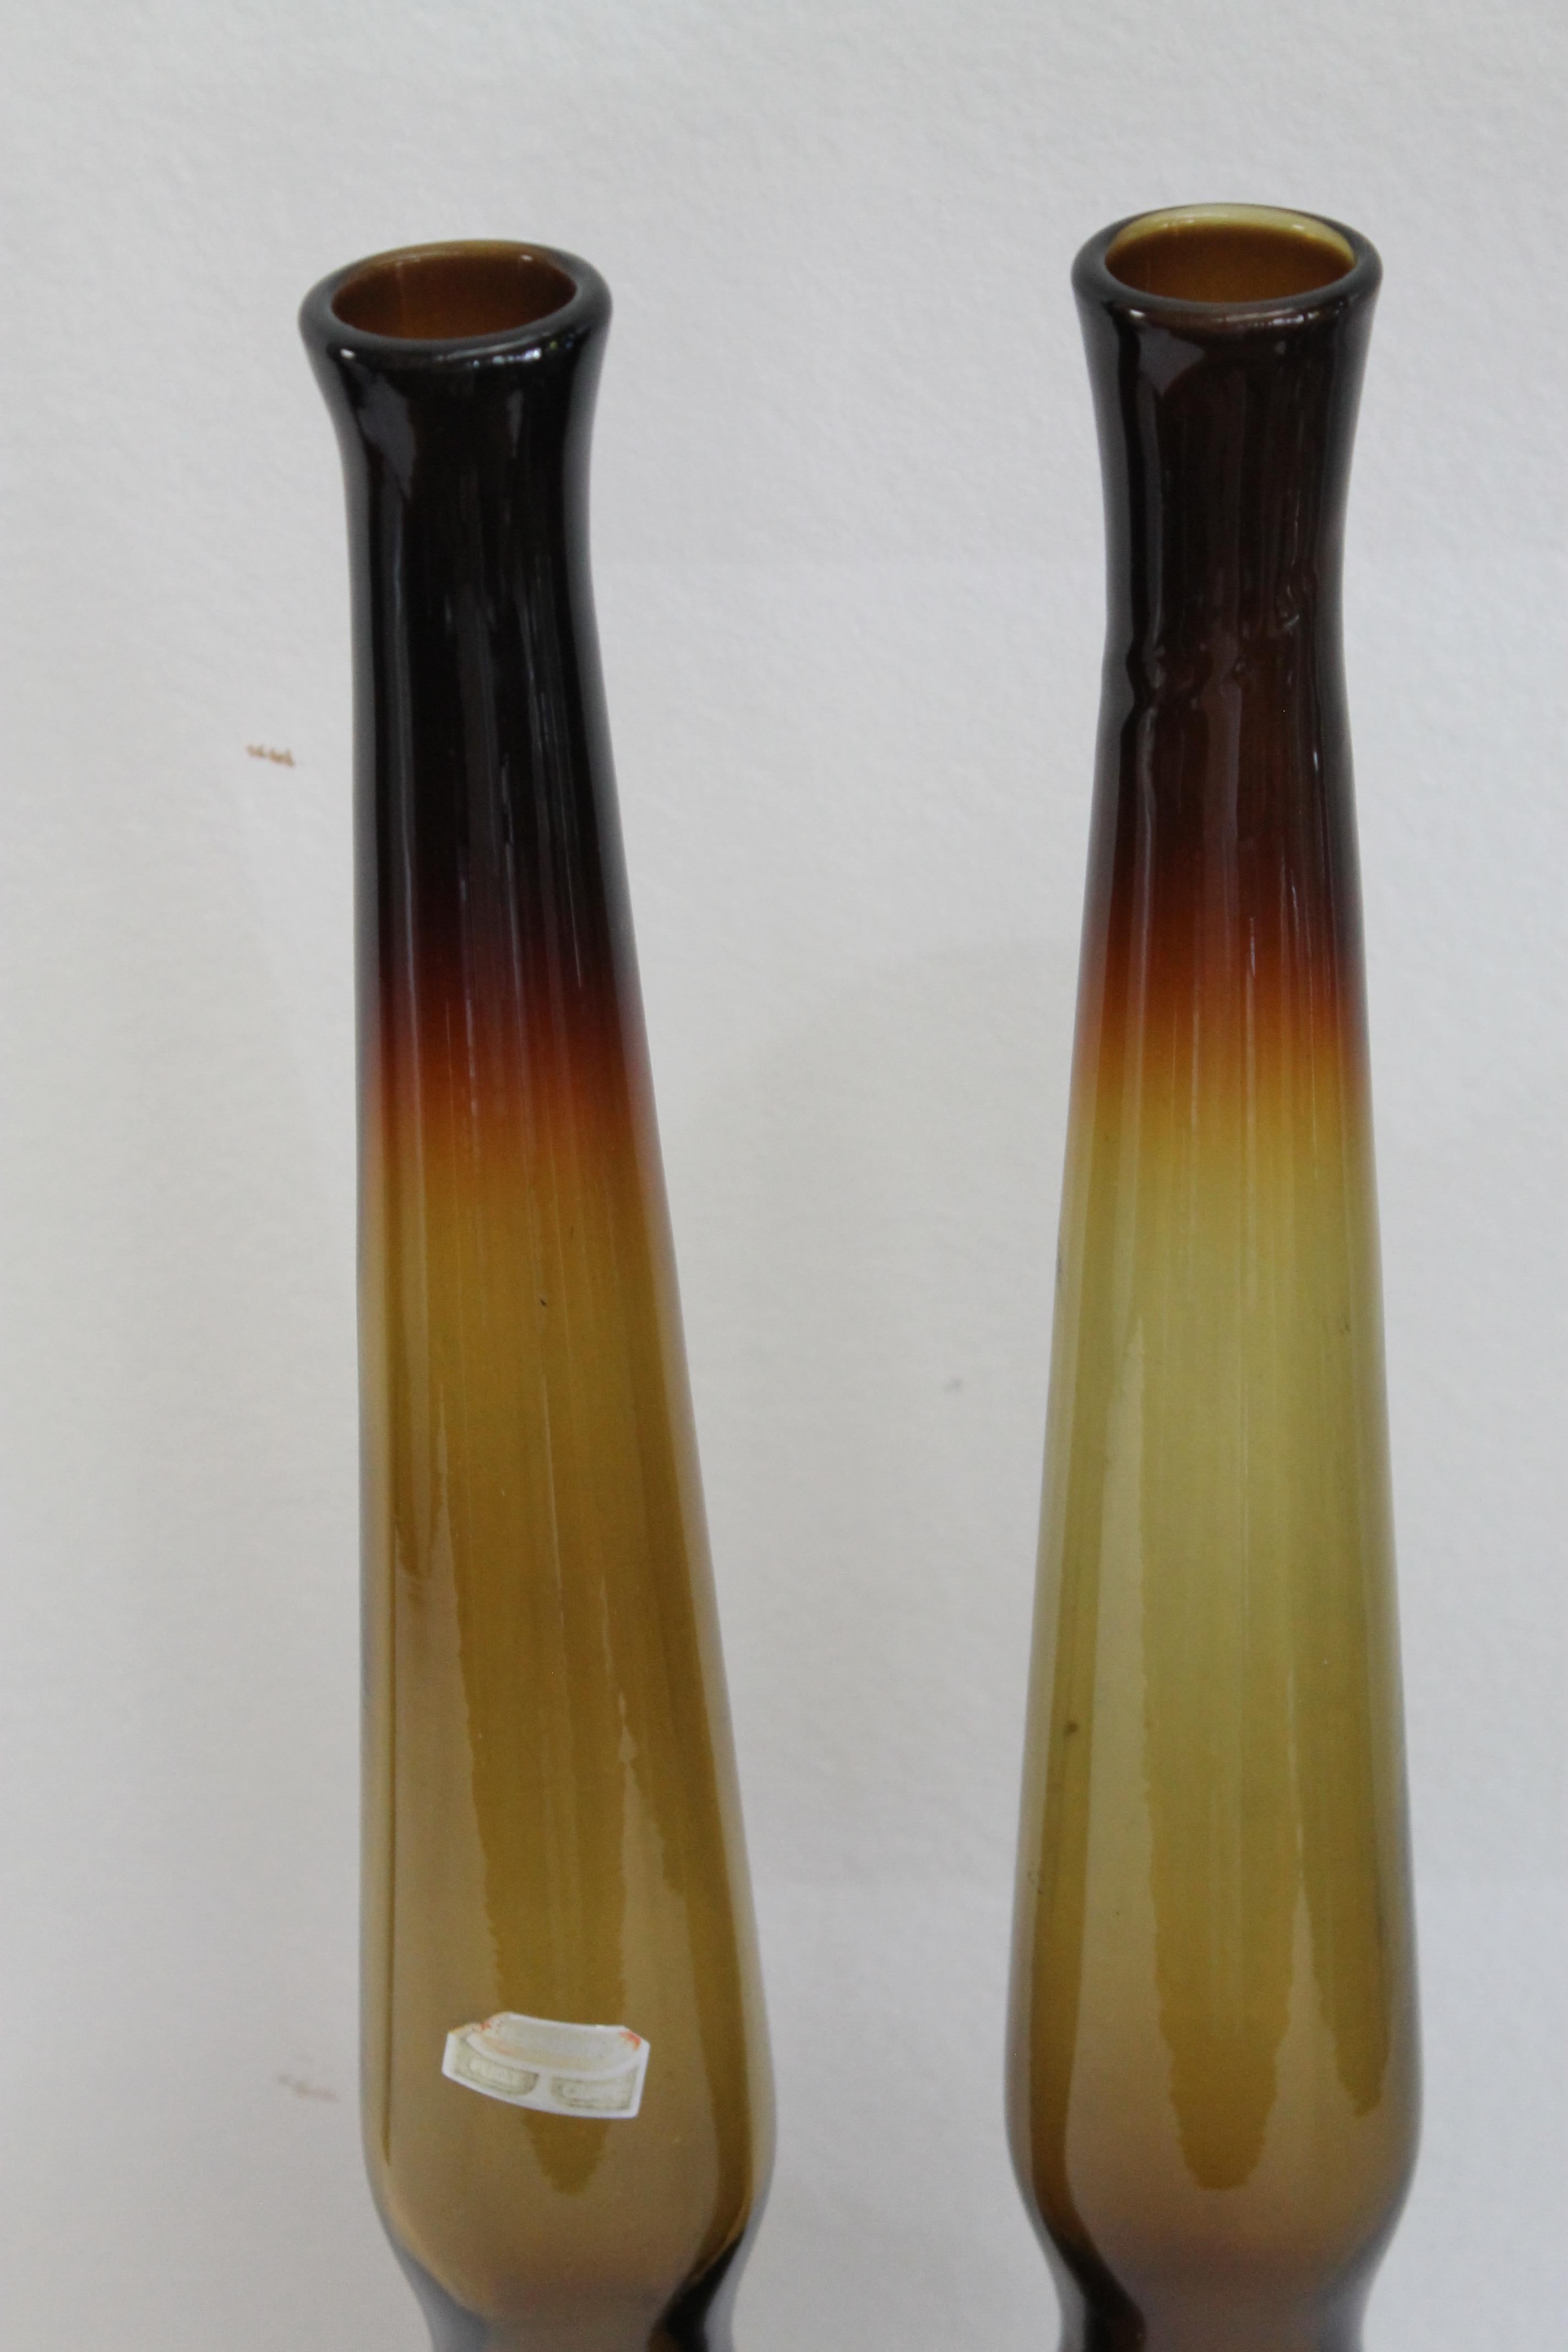 Pair of Greenwich Flint Craft vases. Each vase measures 20.5